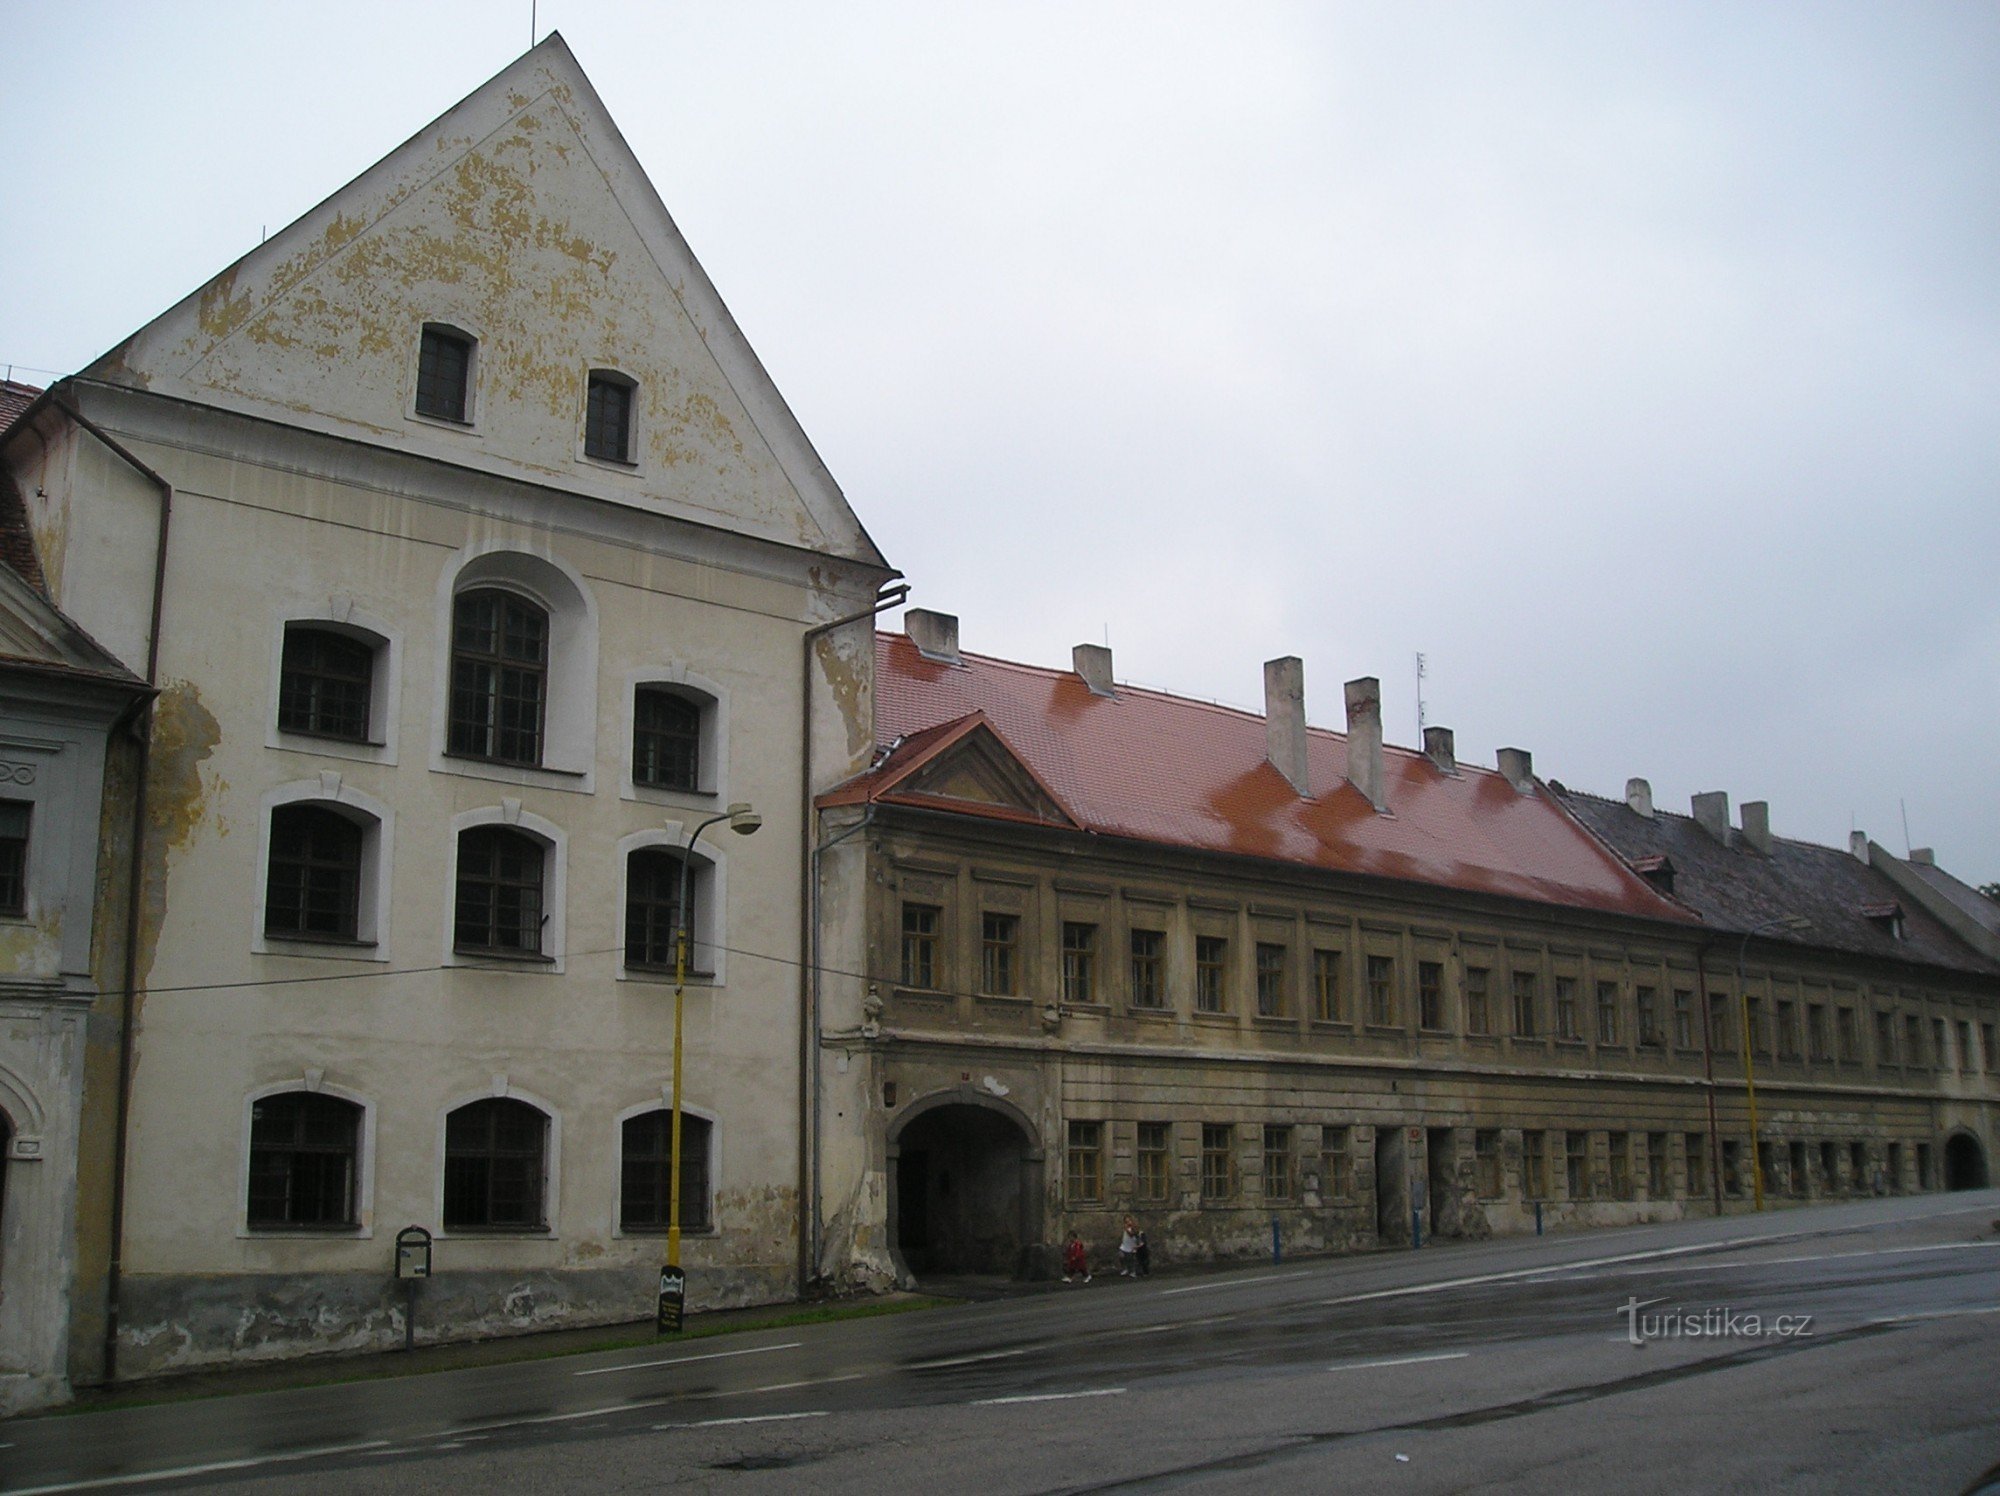 Samostanska tvornica